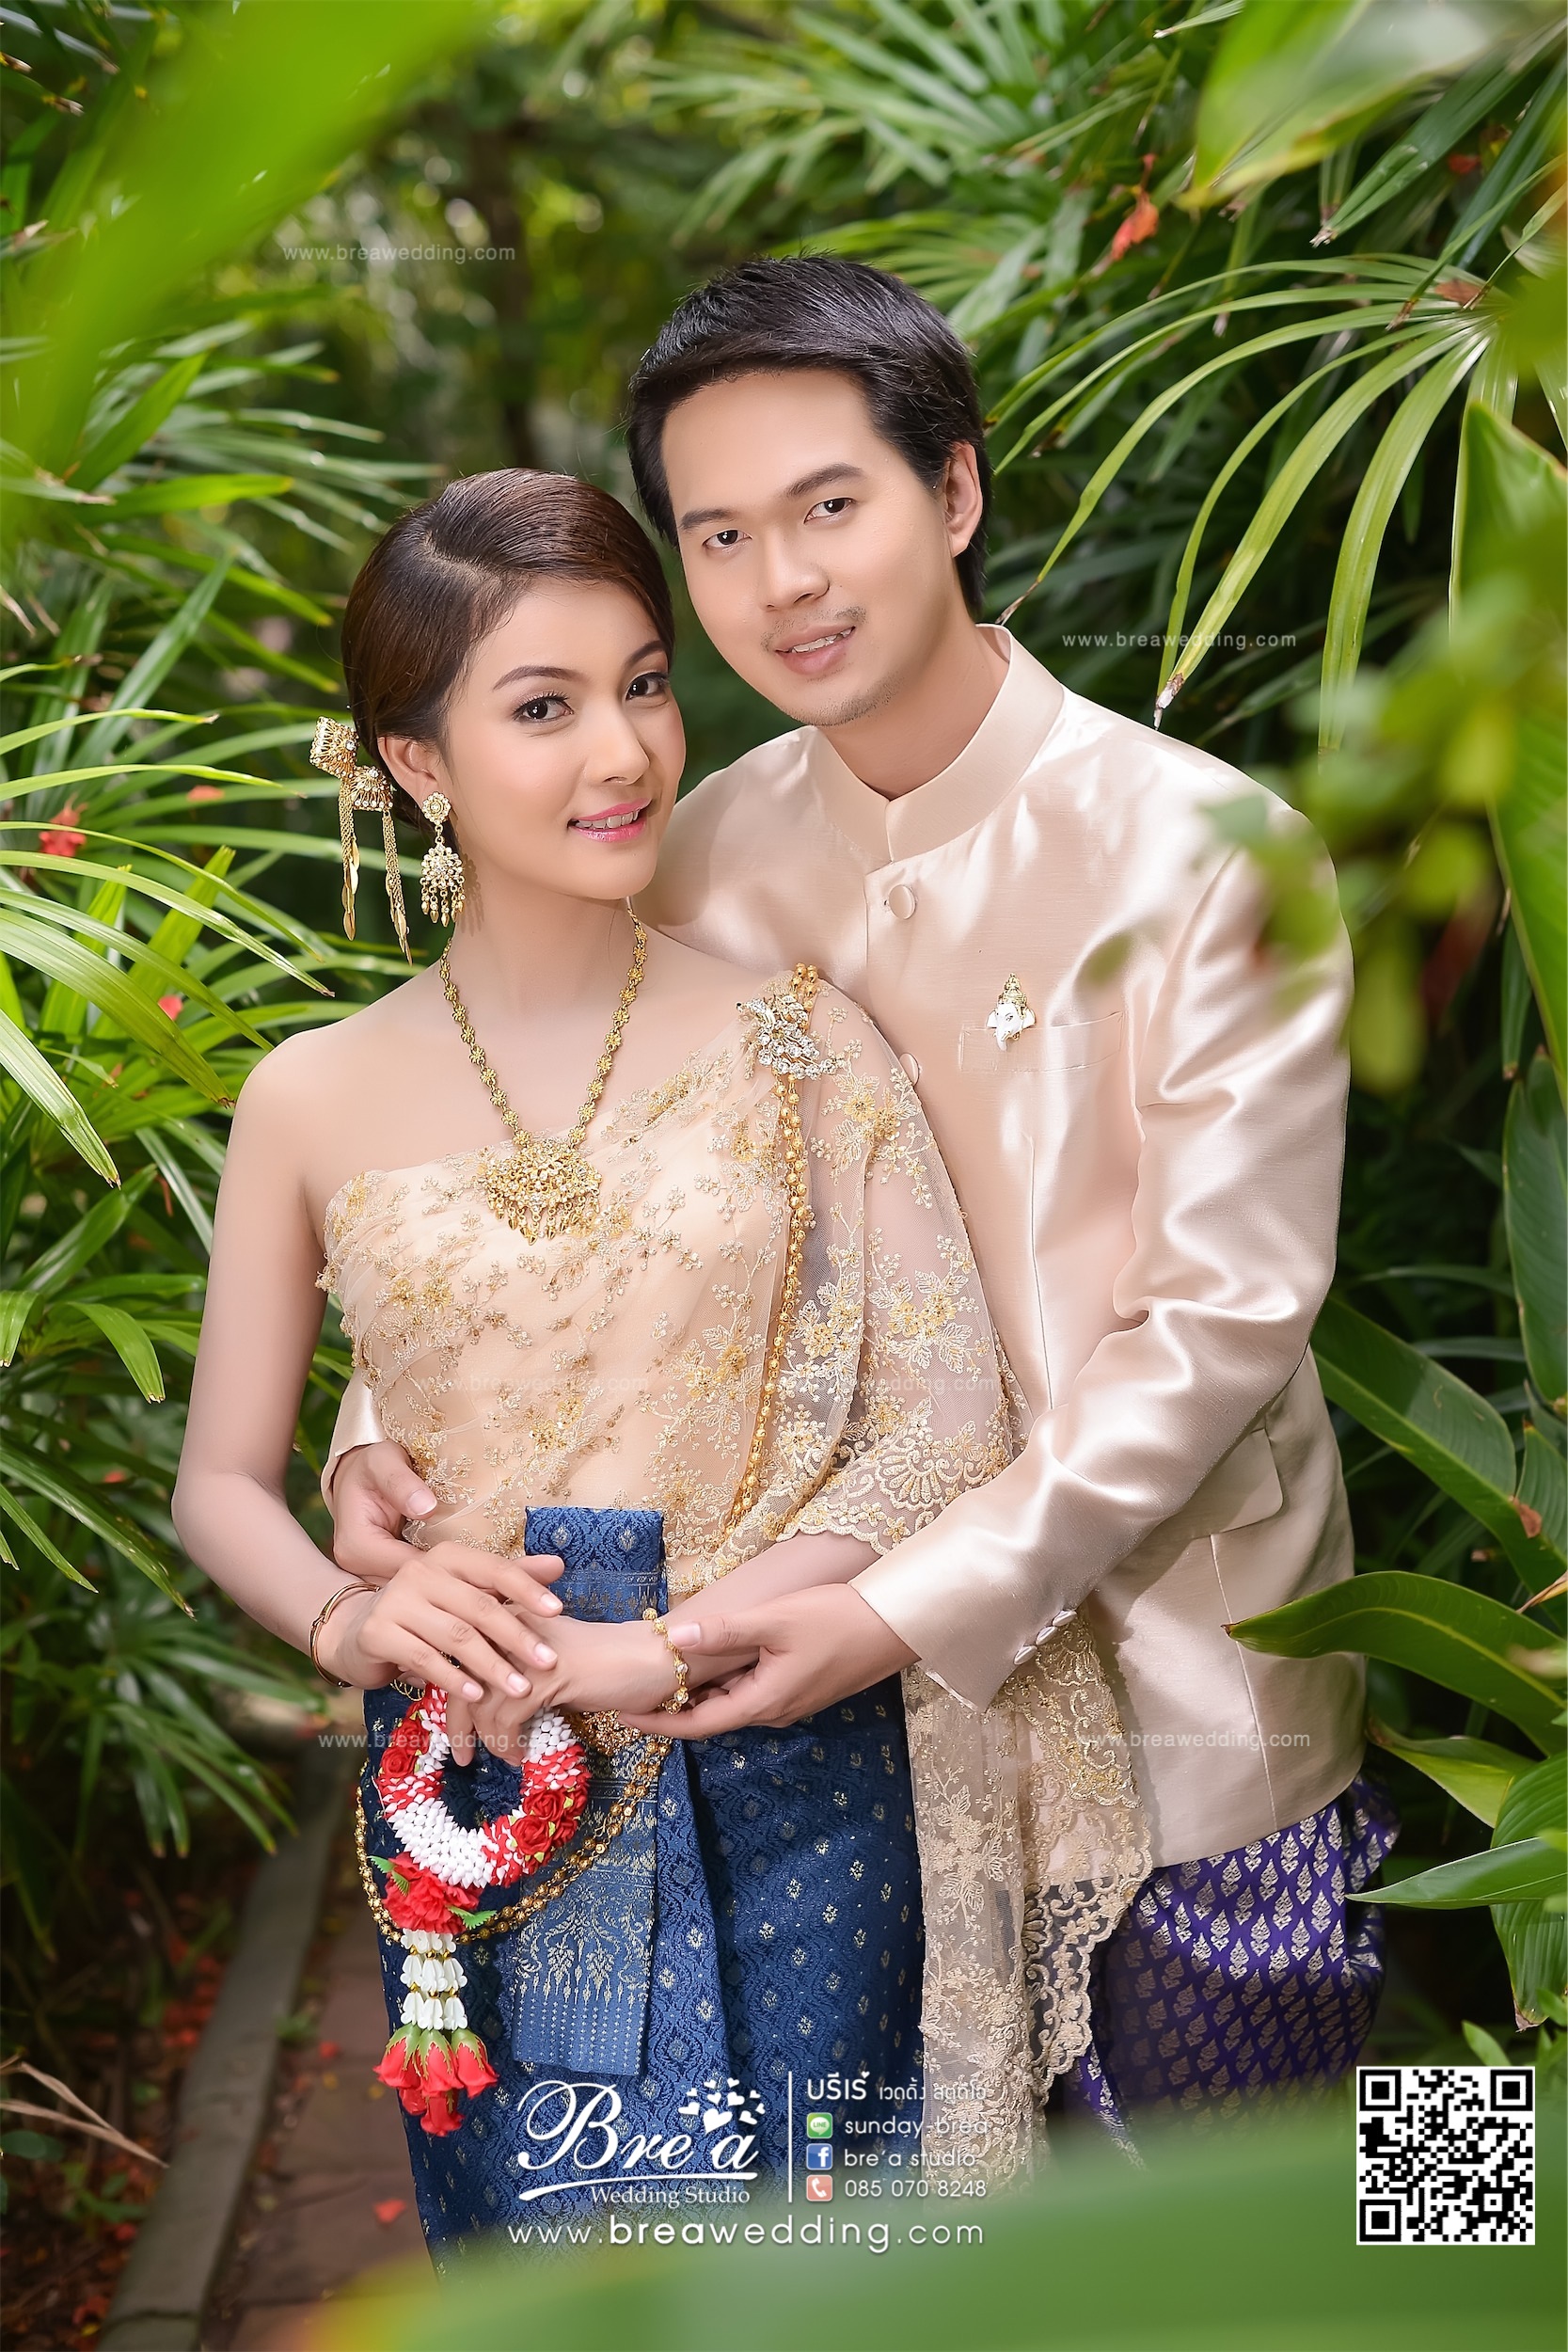 ชุดไทยแต่งงาน บางบัวทอง นนทบุรี